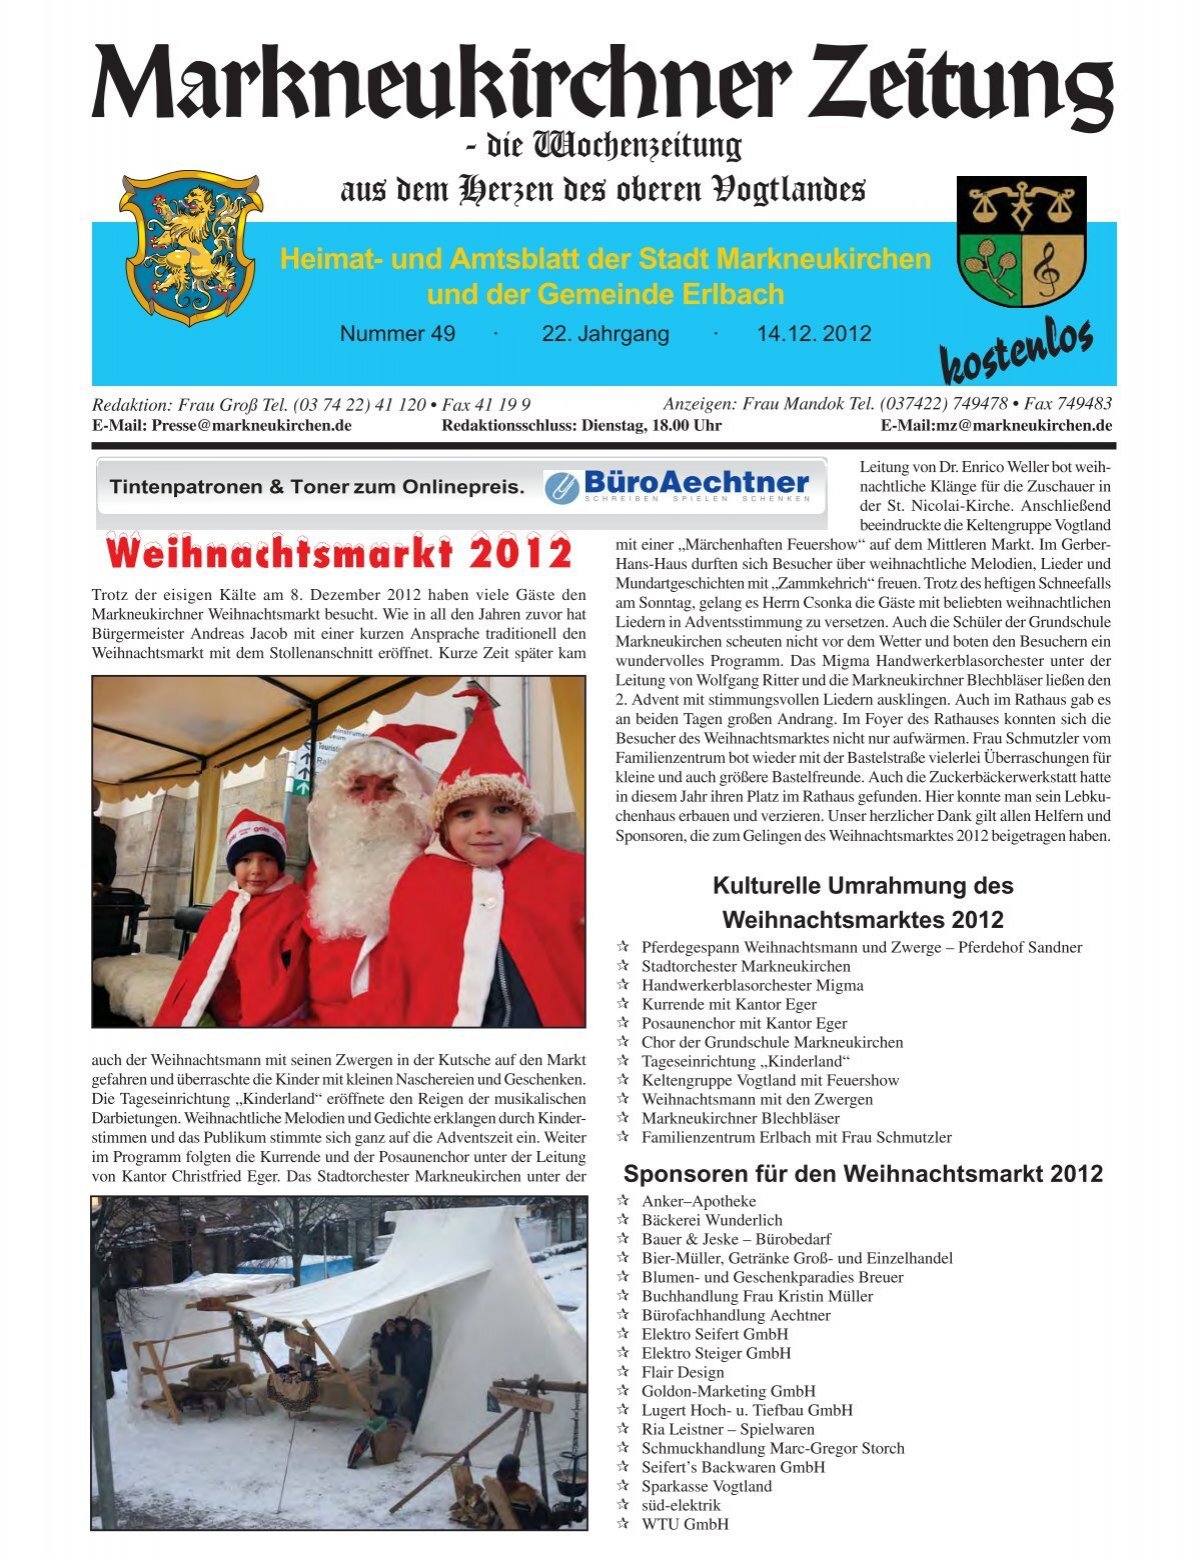 Markneukirchner Zeitung 49 2012 Indd Erlbach